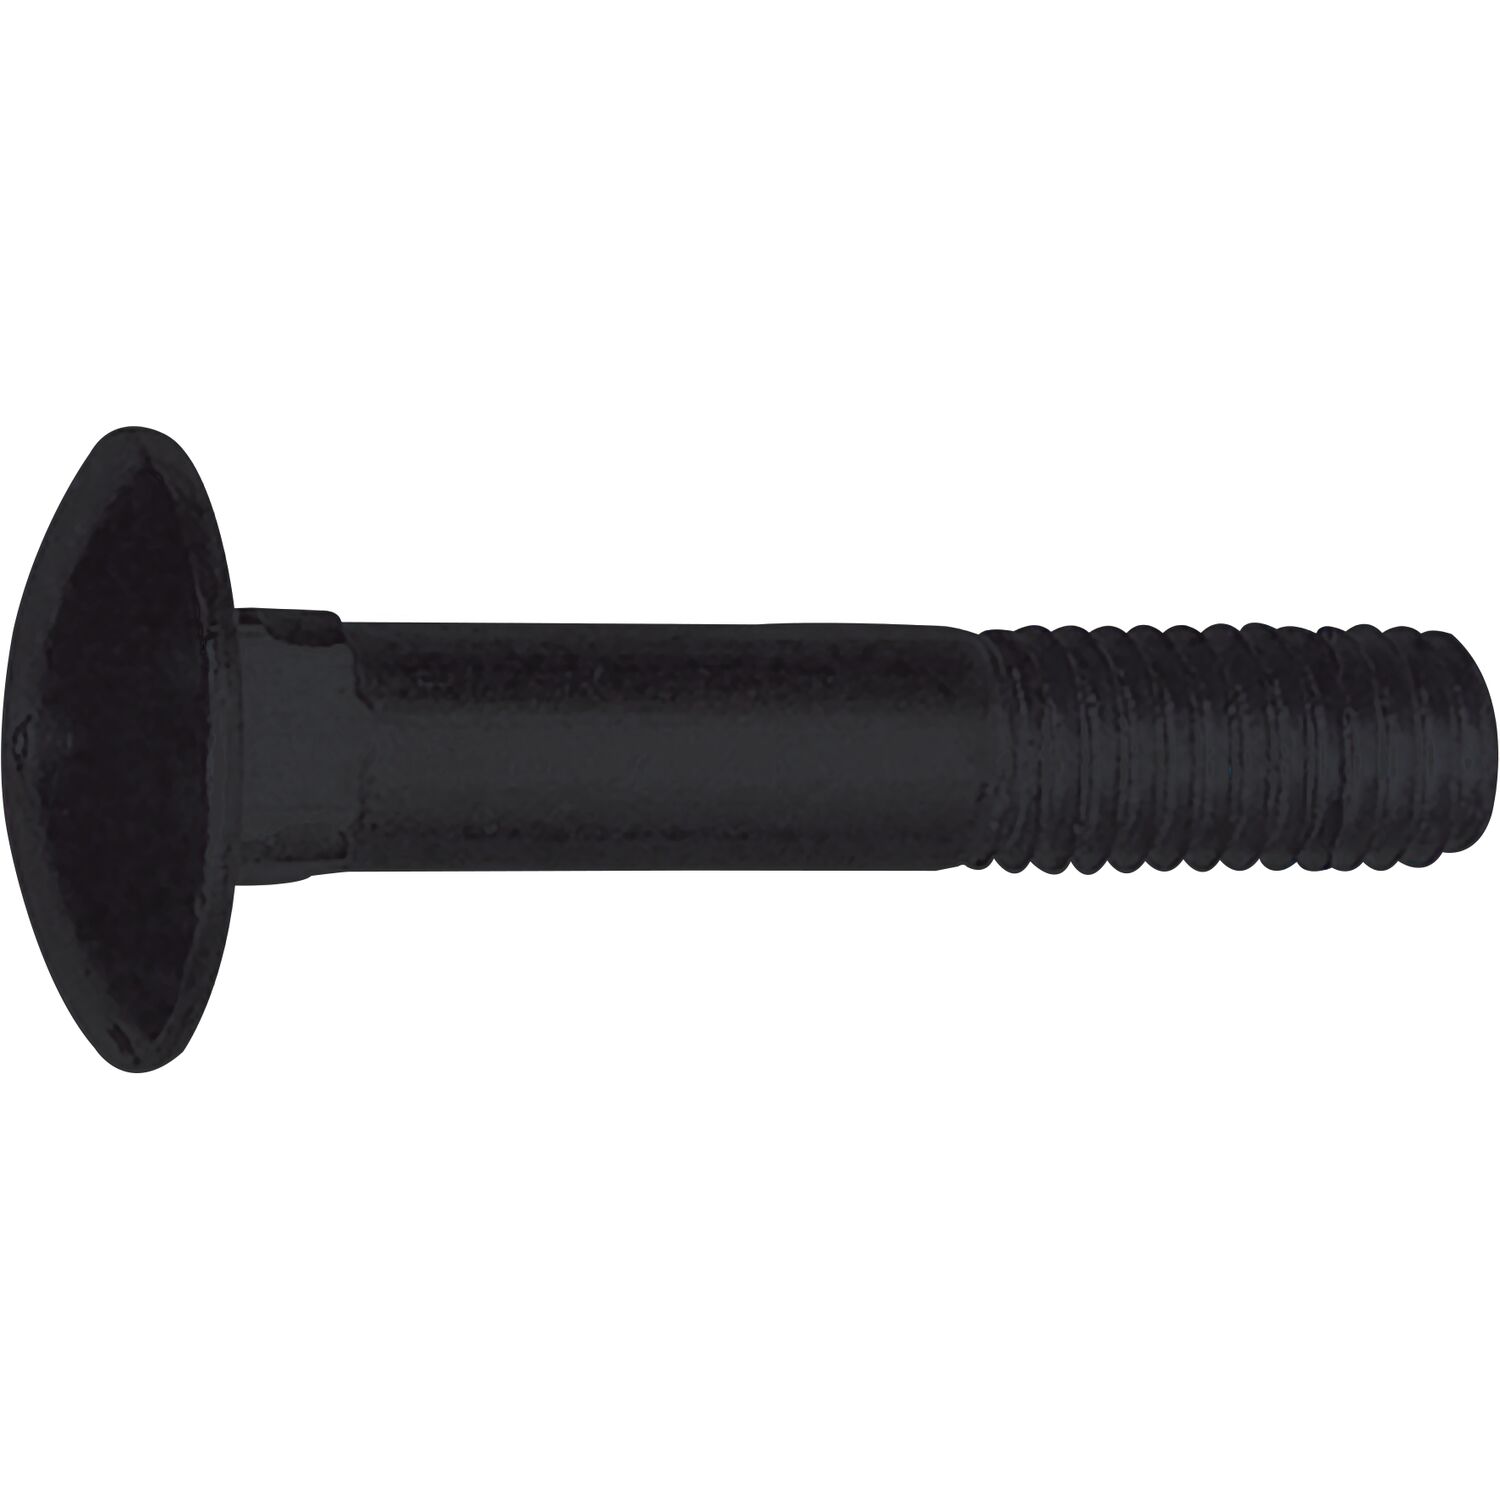 Torbandschraube DIN 603 ohne Mutter - Stahl verzinkt-schwarz - vasalat